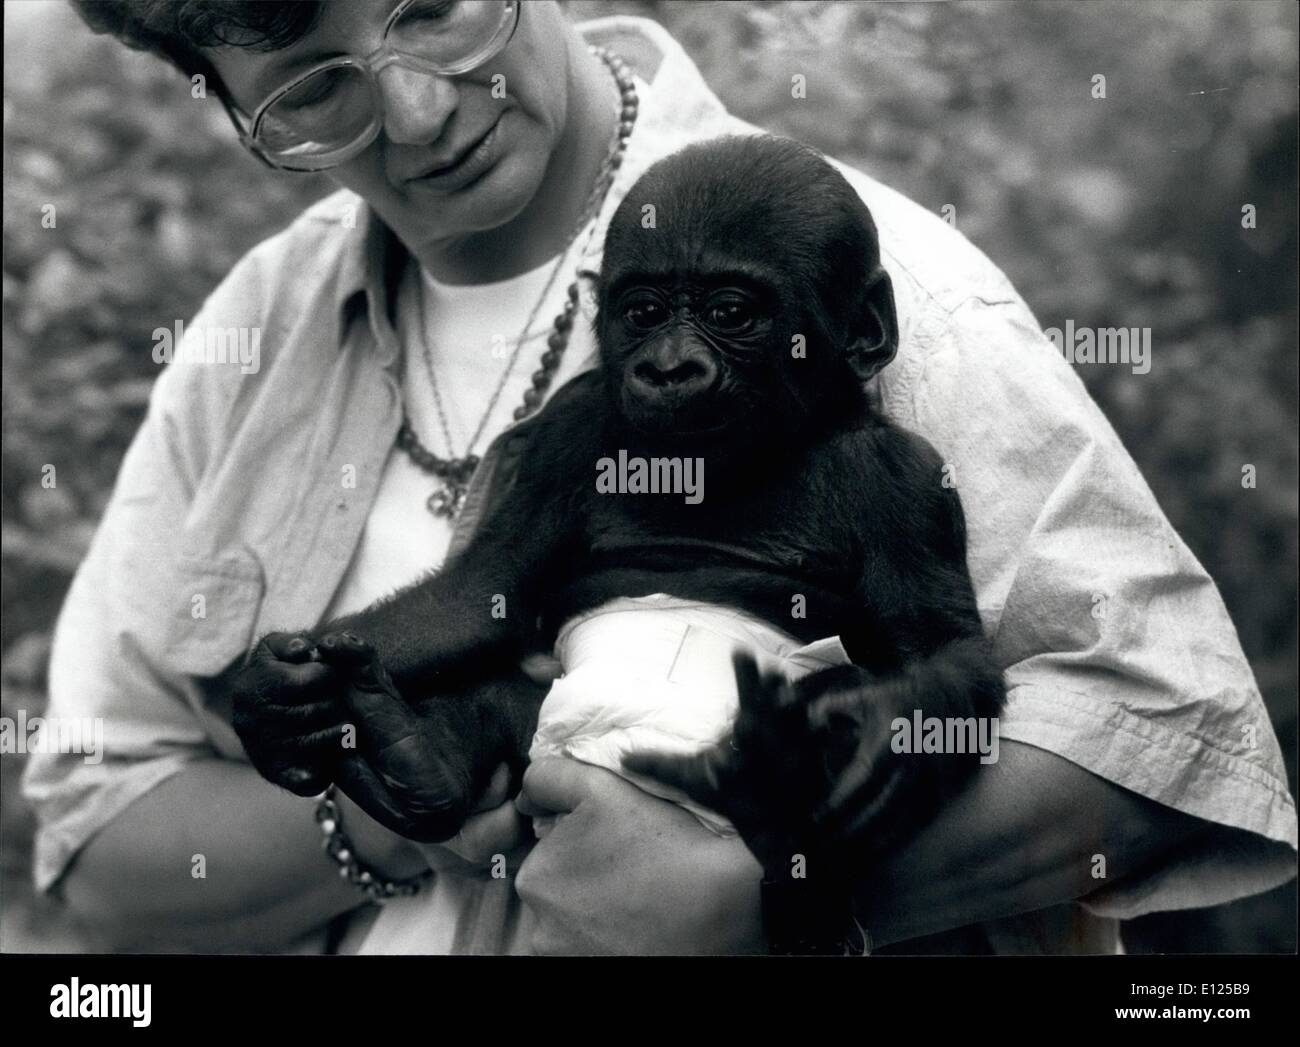 Sept. 09, 1991 - jungen GORILLA IN den Zürich ZOO Krankenschwester Annemarie Schmid hält ein junger Gorilla namens Rafiki w, bedeutet "Freund" auf Swahili. 4-Monate-alten Rafiki der Zürcher, 00 lächelt und scheint bei einer Pressekonferenz in Zürich gut wo er seinen ersten öffentlichen Auftritt hatte. Stockfoto